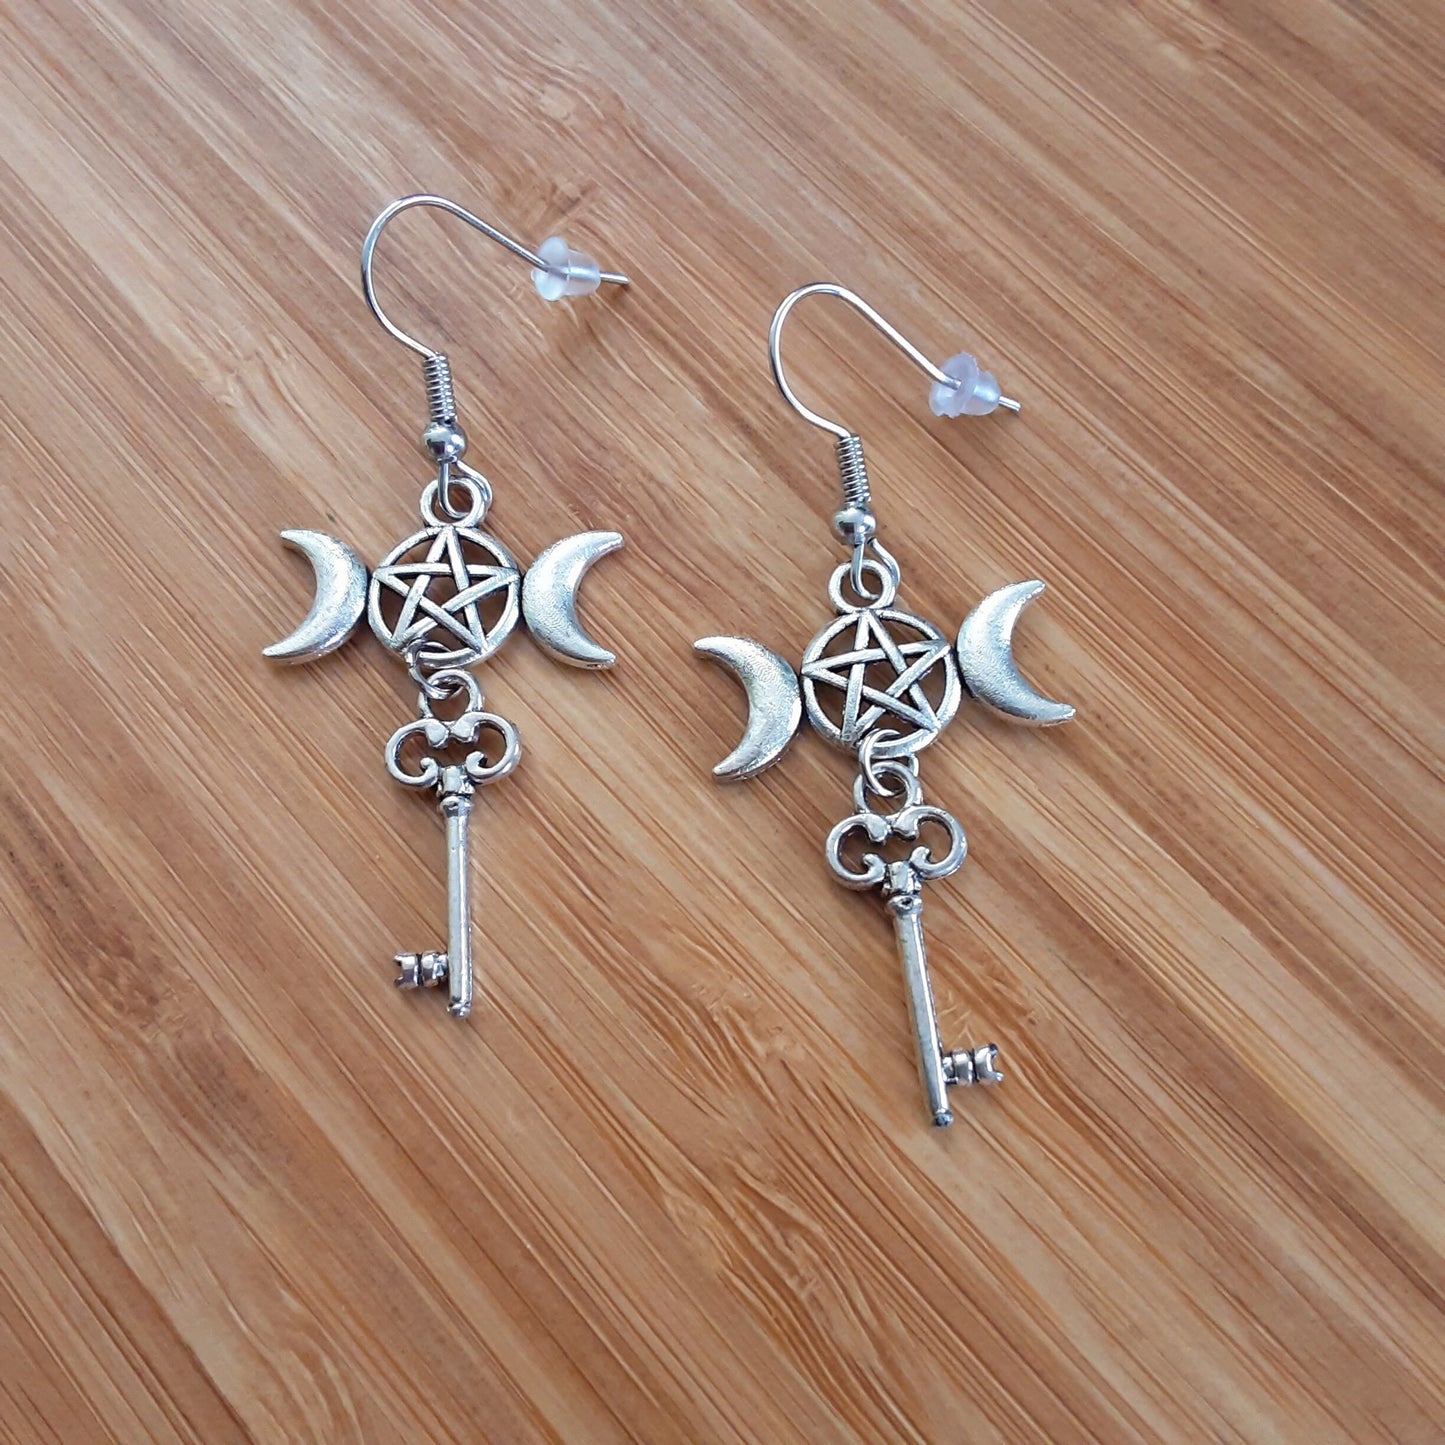 Hekate key earrings Triple Moon Goddess Pagan jewelry